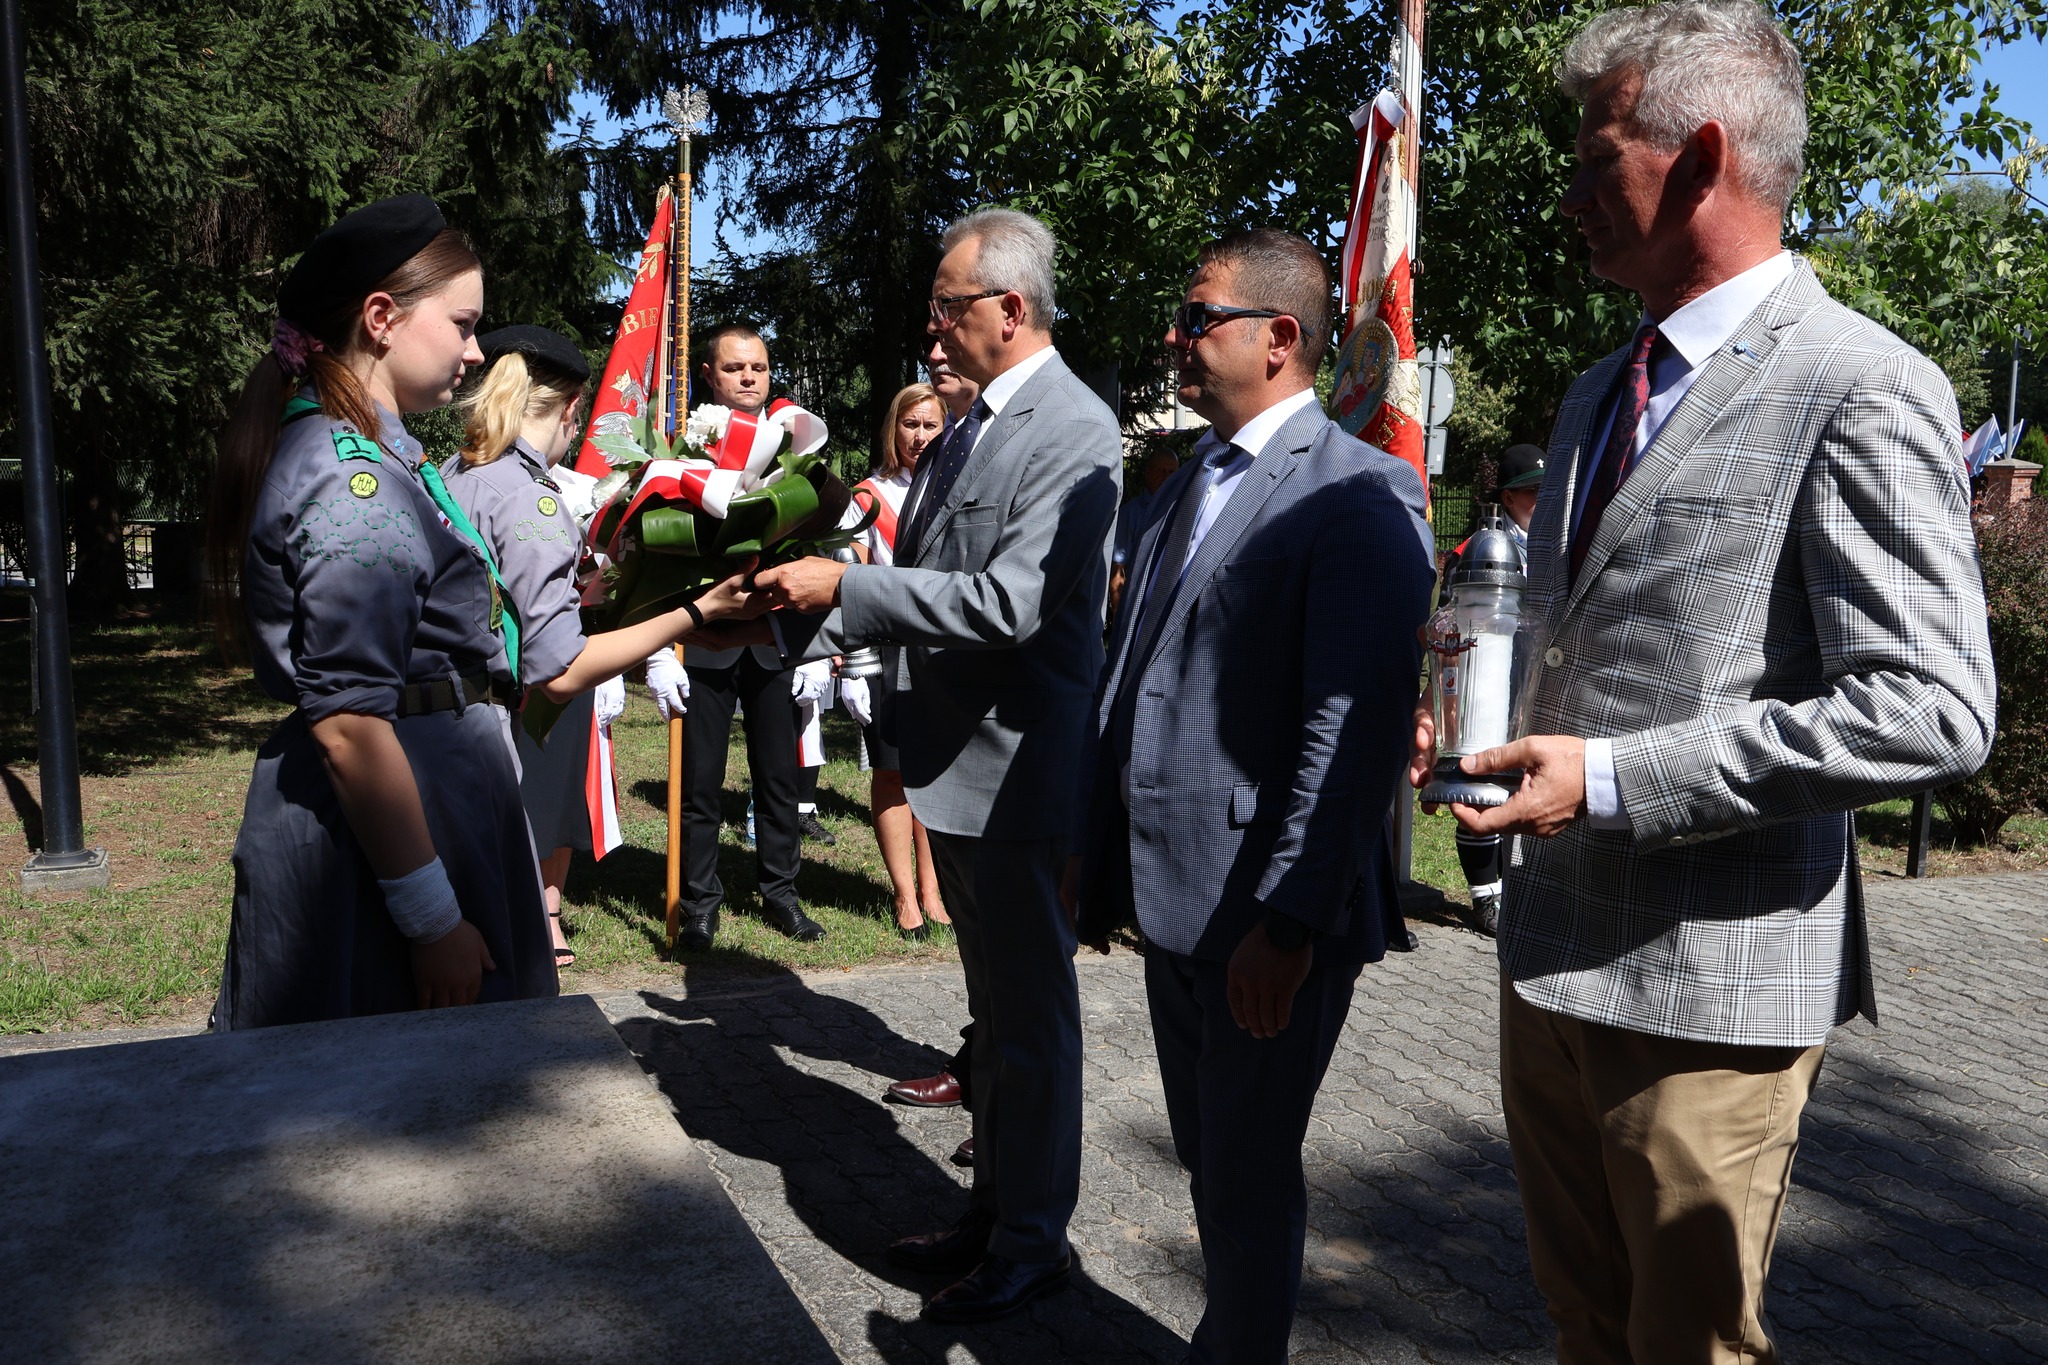 Kwiaty pod pomnikiem Nieznanego Żołnierza złożyli przedstawiciele gminy Zwoleń, delegacja składa się z 4 mężczyzn, jeden z nich w rękach trzyma kwiaty